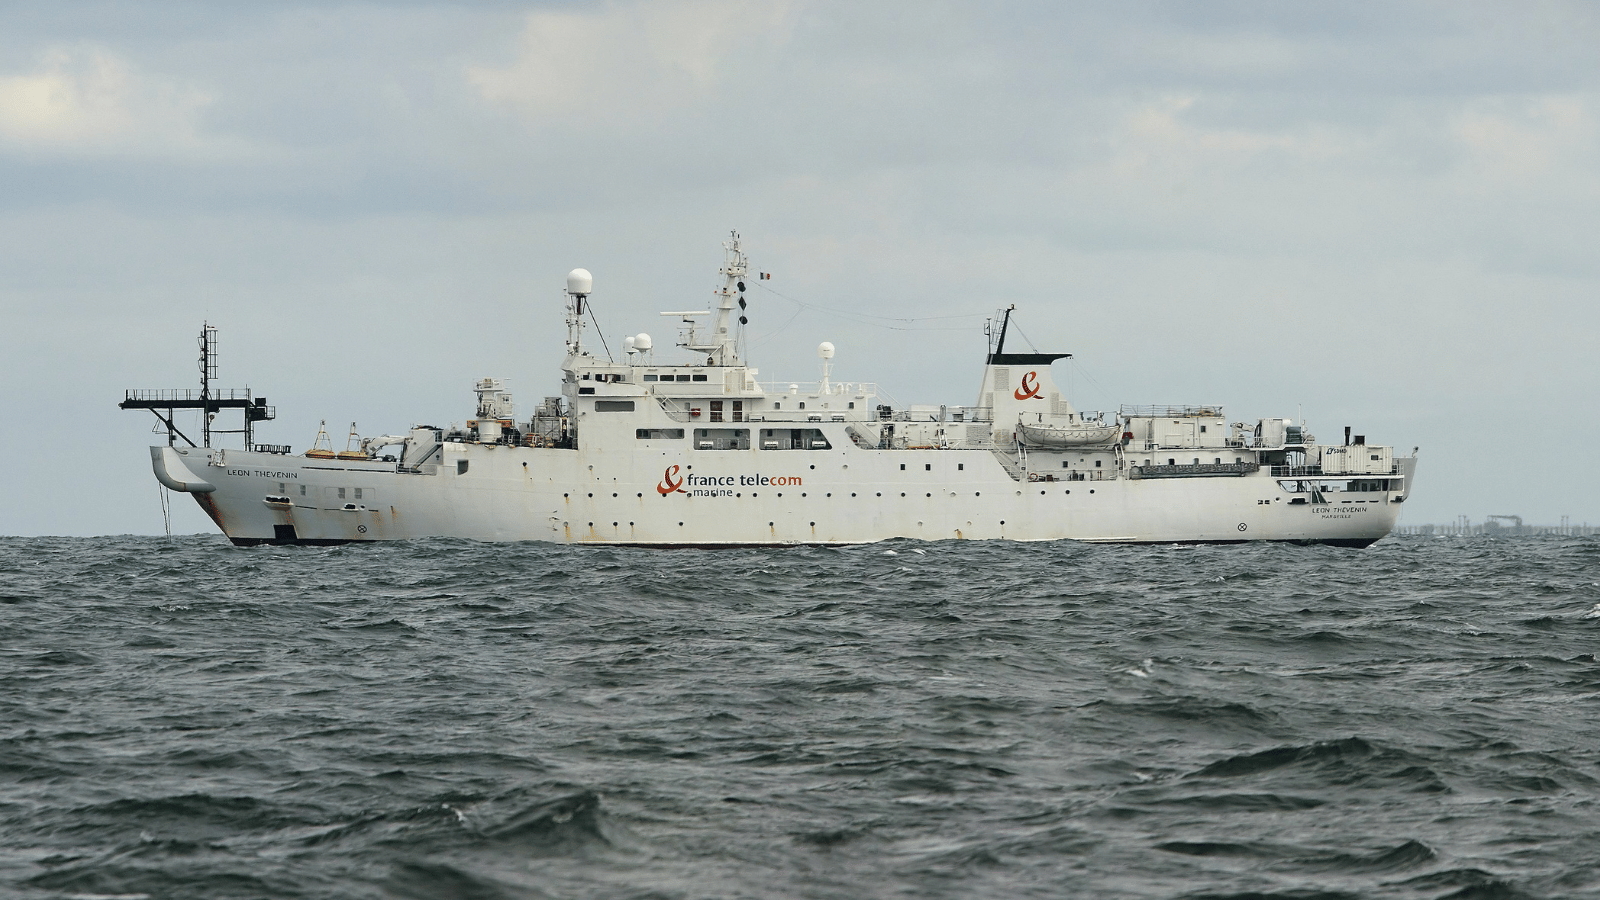 Léon Thévenin vessel Ace cable (LS: DALL-E 3)